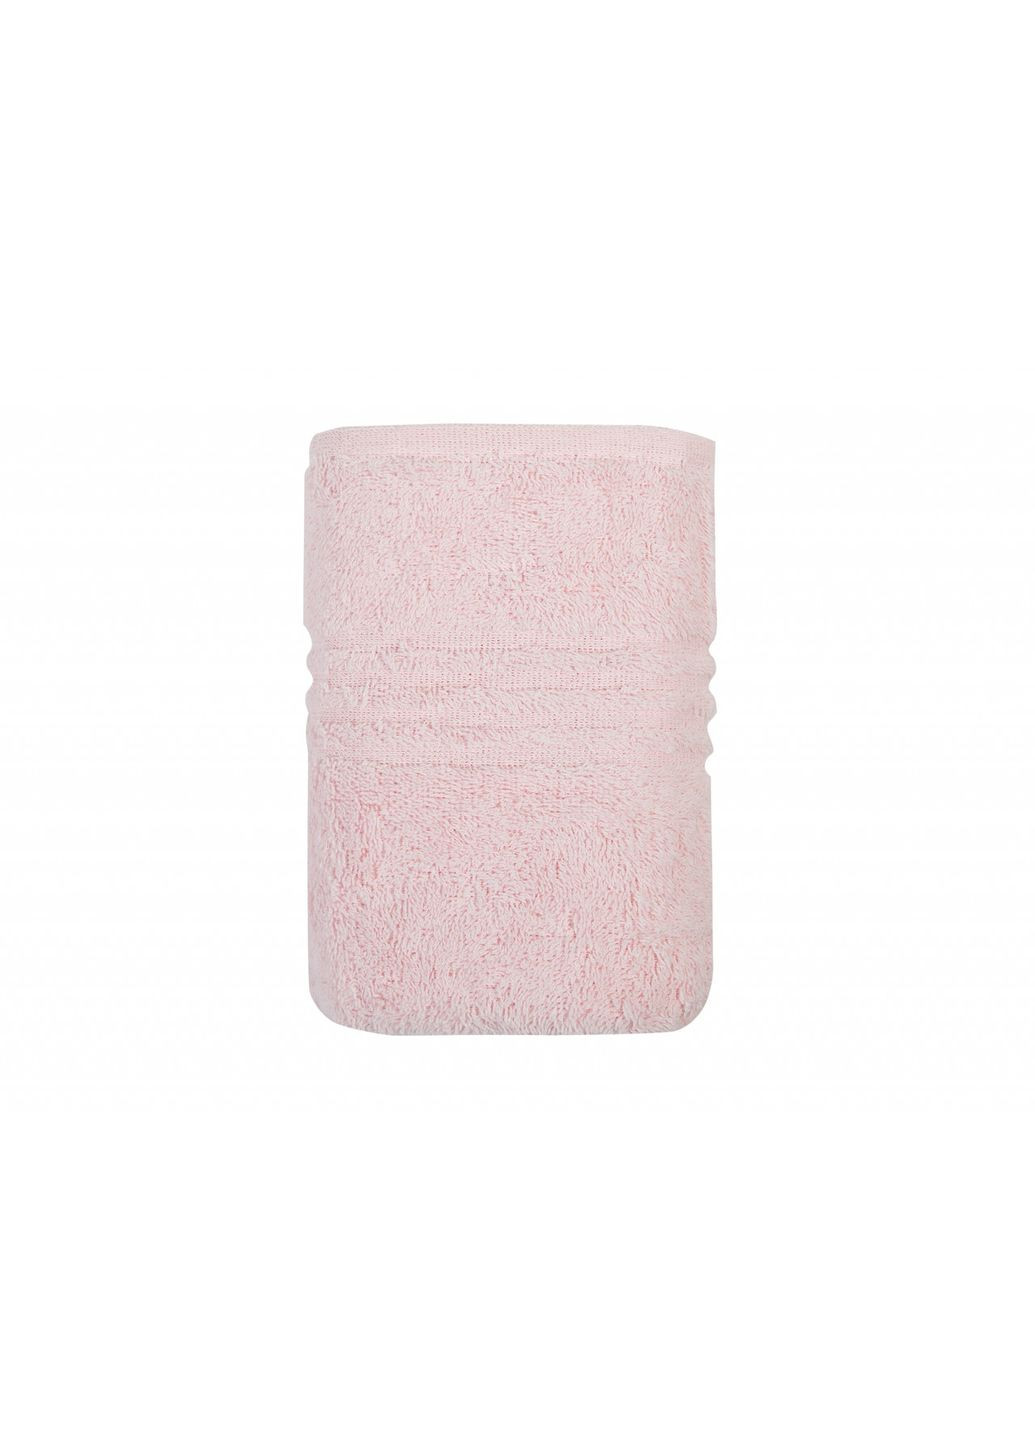 Irya полотенце - linear orme a.pembe розовый 70*130 розовый производство -